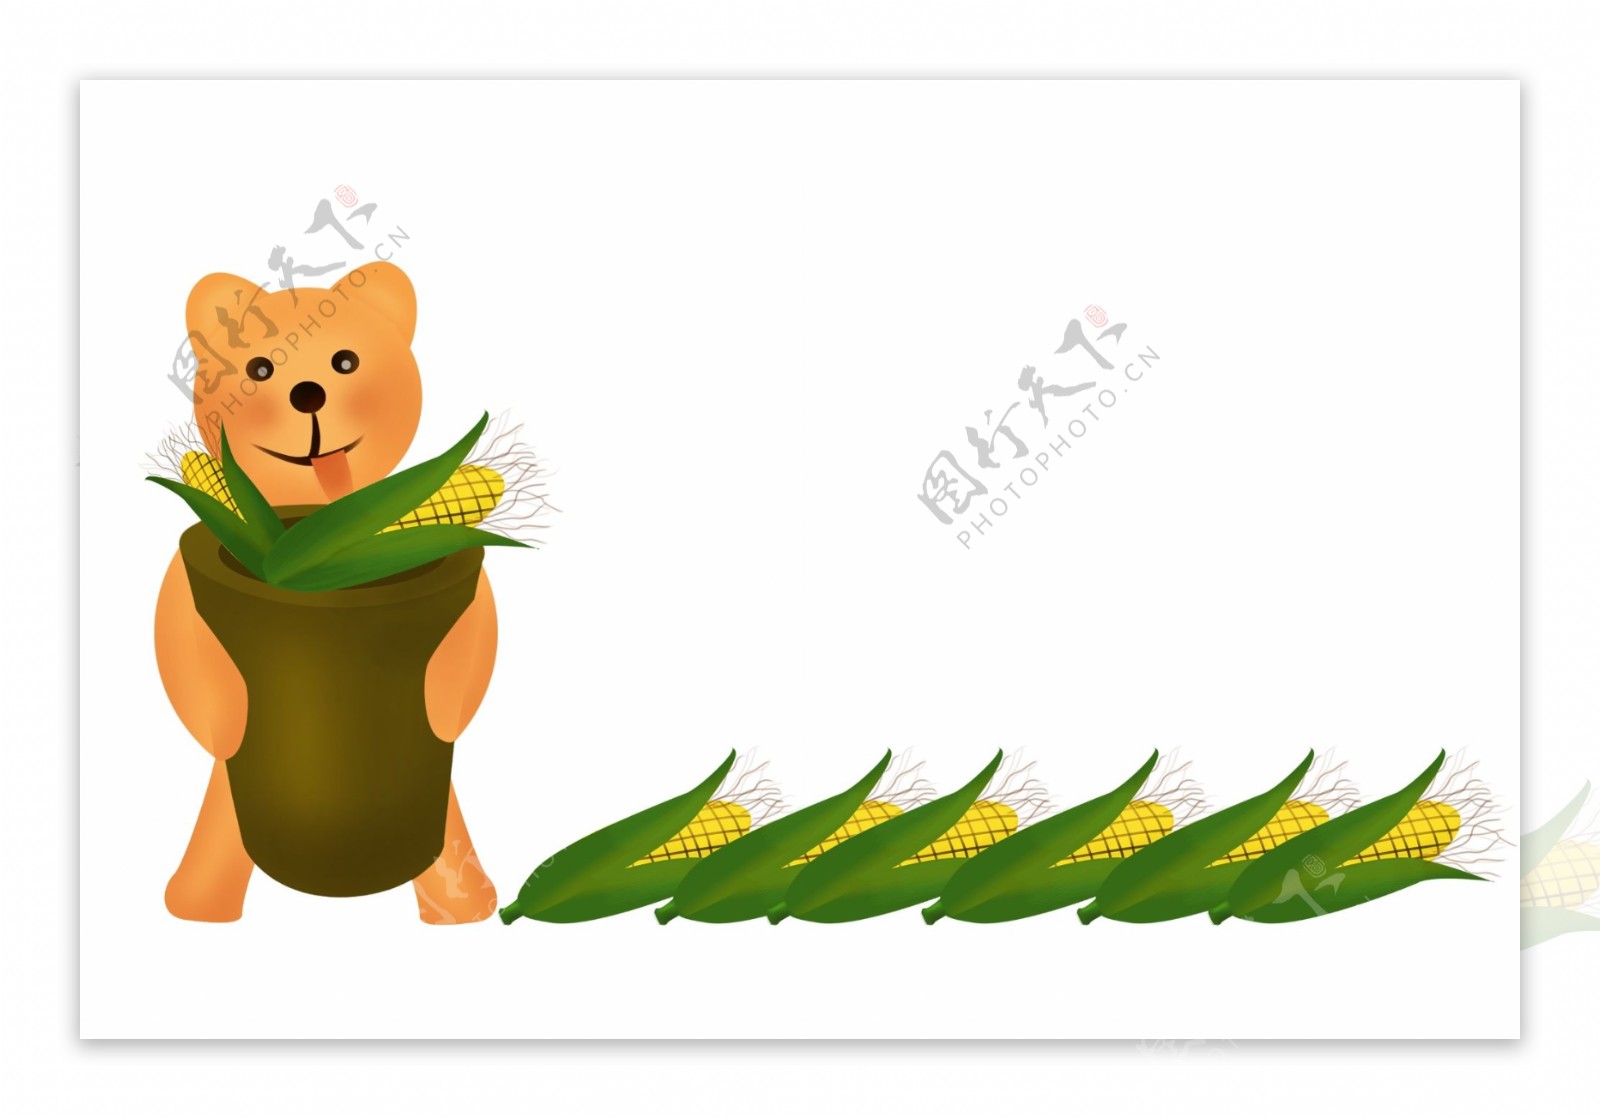 小熊和玉米分割线插画